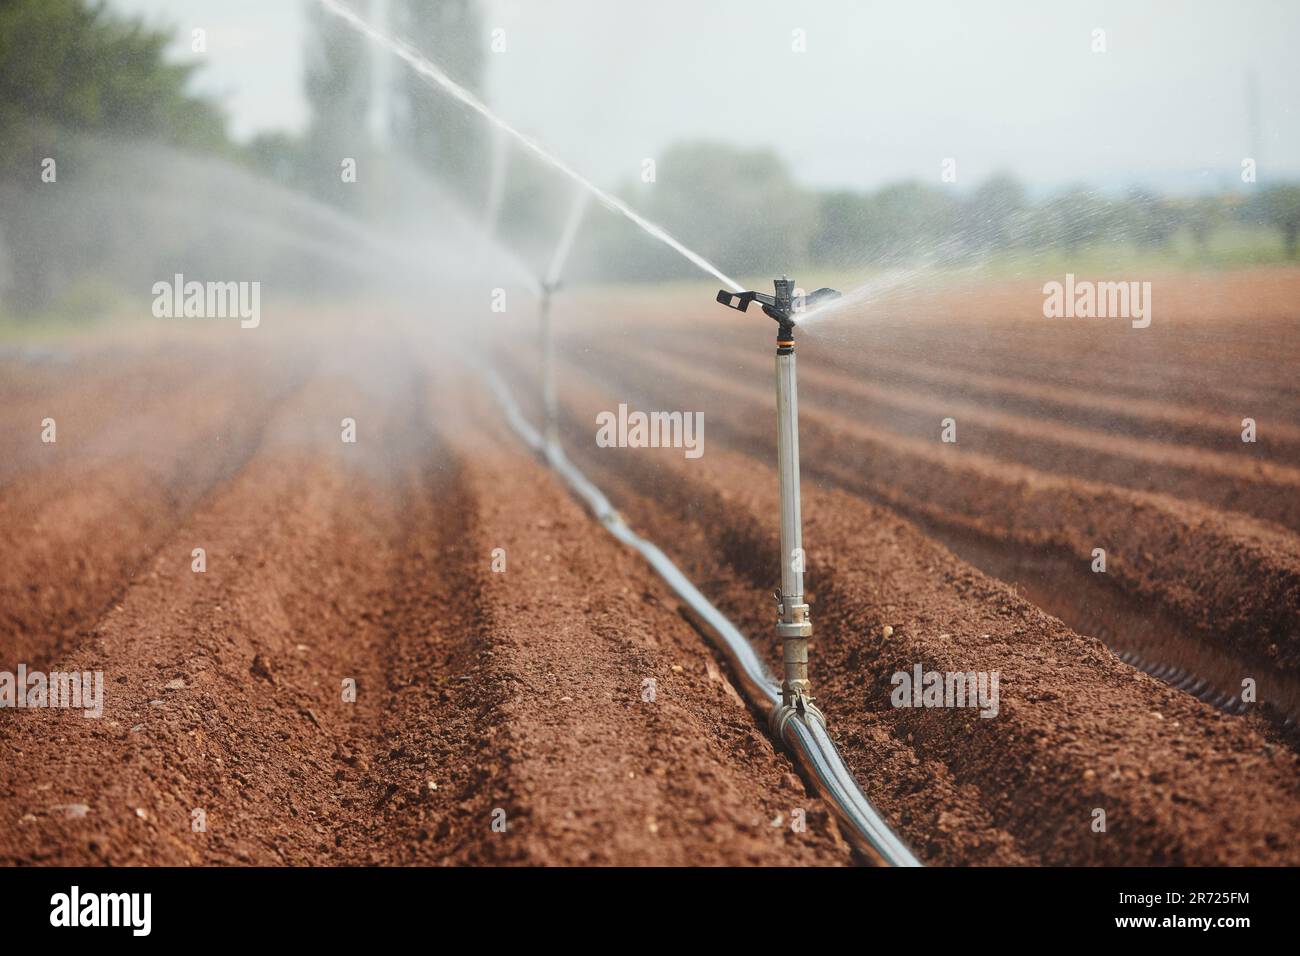 Attrezzature agricole di irrigazione spruzzando acqua su asciutto archiviato. Temi siccità, ambiente e agricoltura. Foto Stock